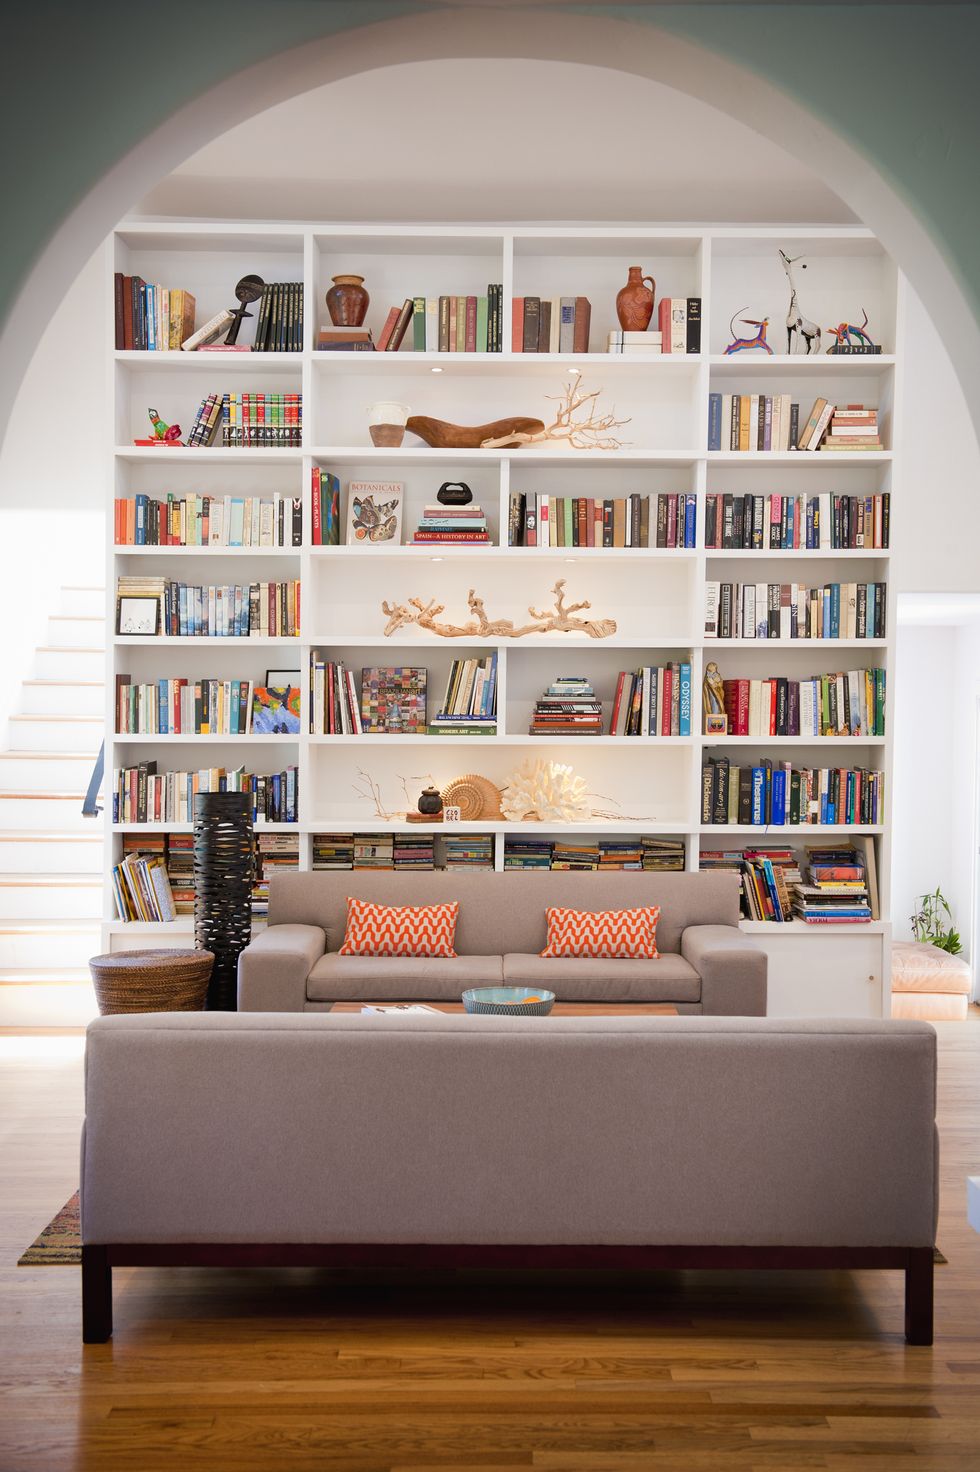 lightfilled living room with tall bookshelves